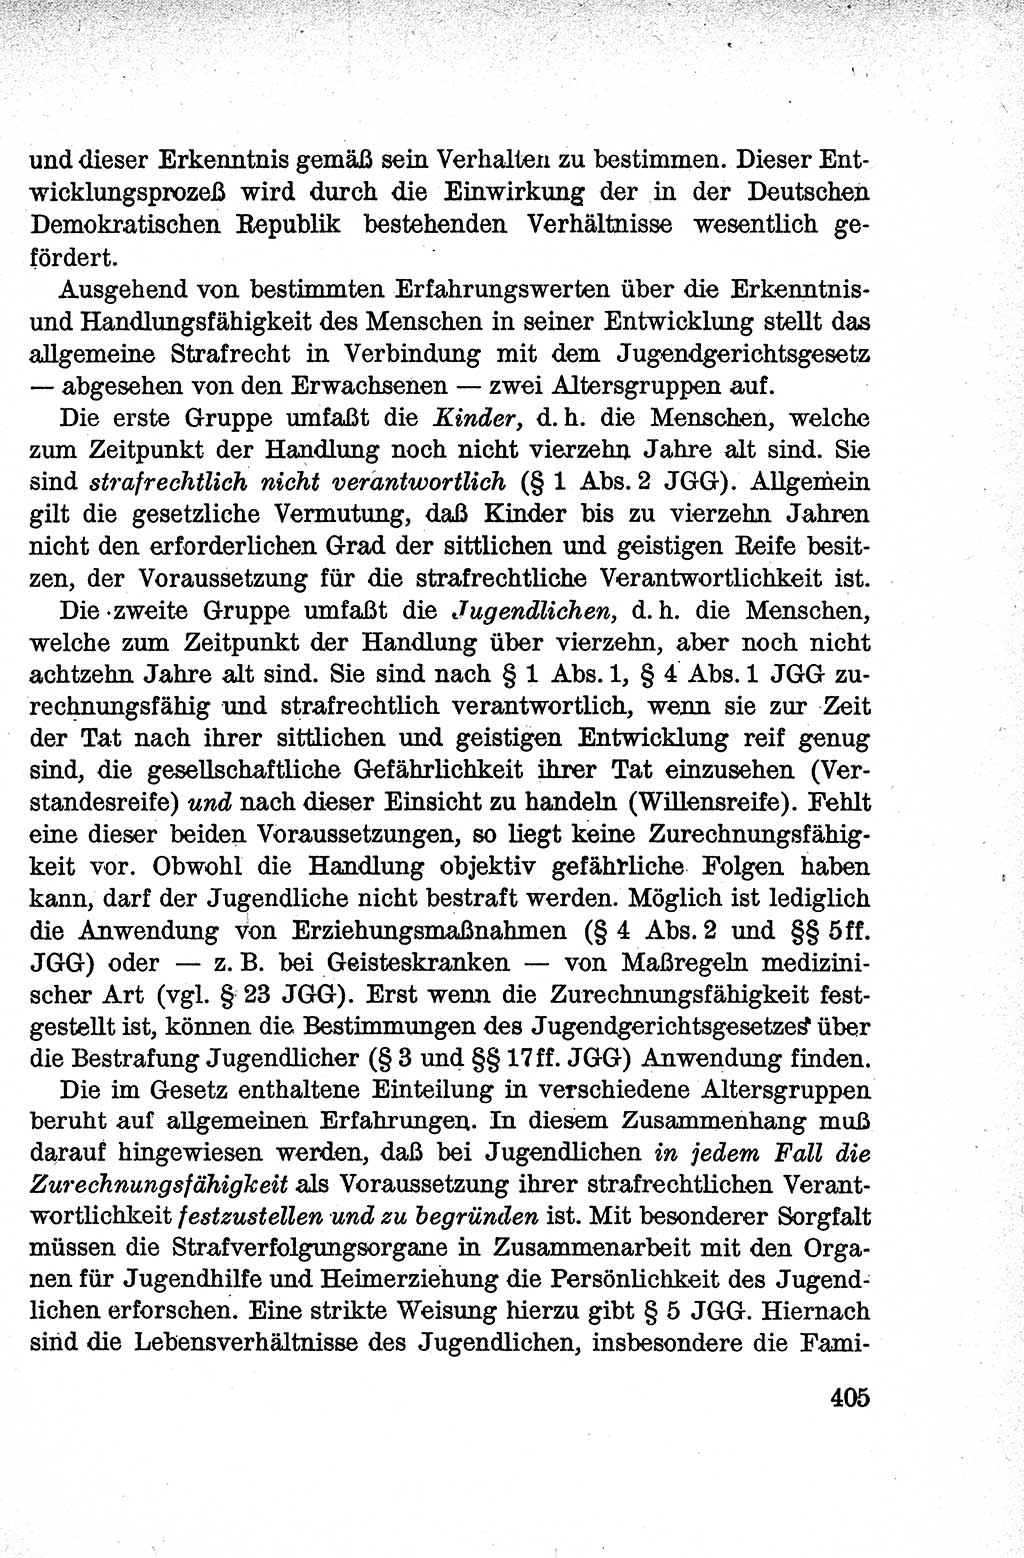 Lehrbuch des Strafrechts der Deutschen Demokratischen Republik (DDR), Allgemeiner Teil 1959, Seite 405 (Lb. Strafr. DDR AT 1959, S. 405)